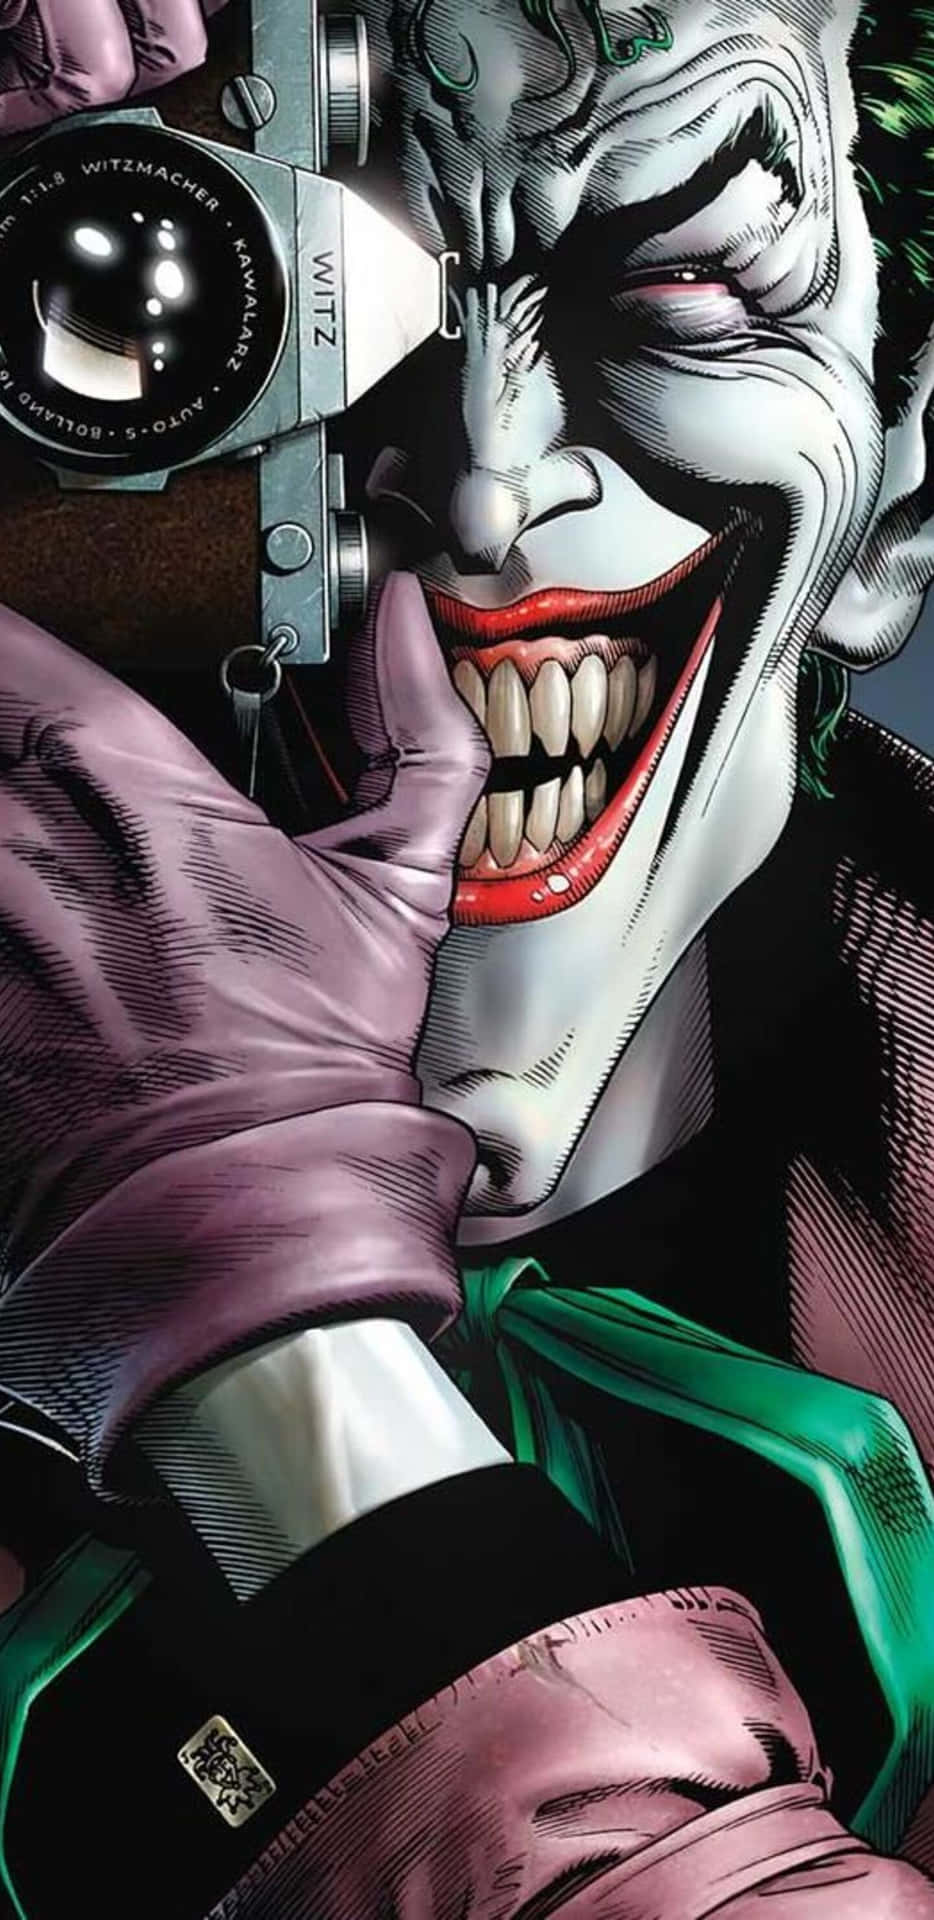 The chilling laughter of The Joker in The Killing Joke Wallpaper